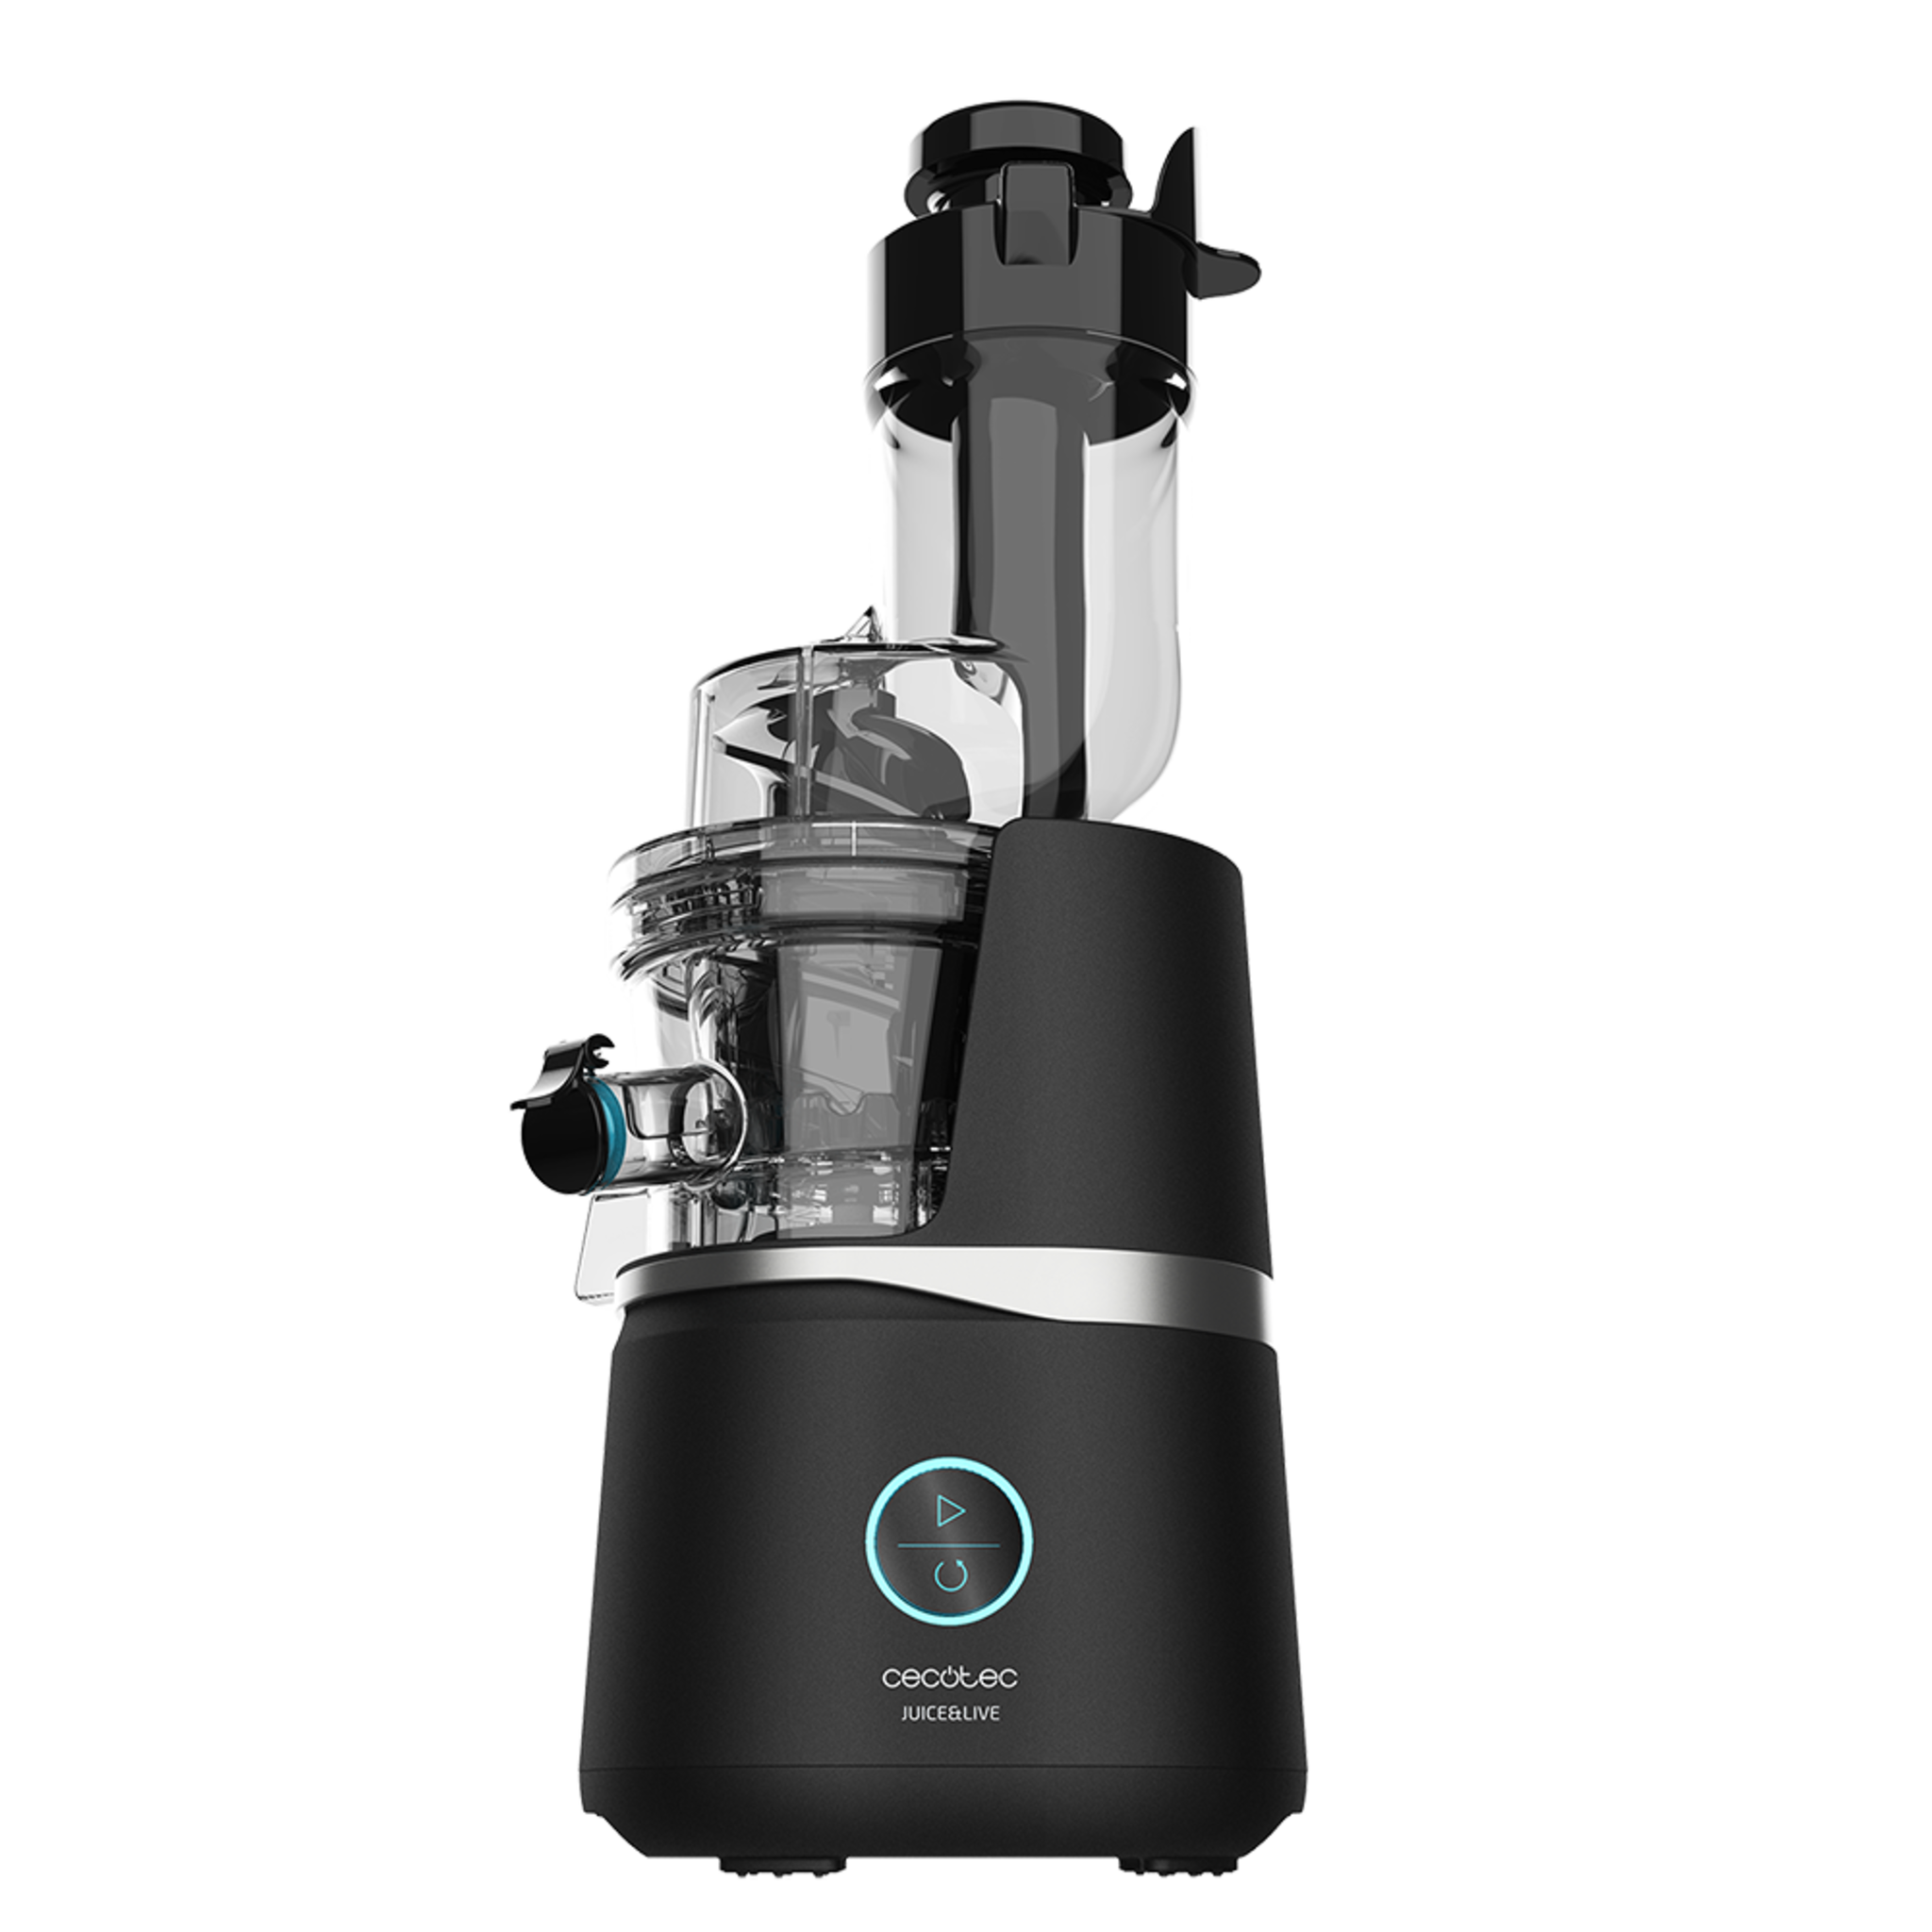 Extracteur de jus par pression à froid Juice&Live 3000 EasyClean avec un moteur de 150 W, un filtre facile à nettoyer, une vitesse lente de 50 tr/min et un tube d’embouchure XL pour introduire des fruits et légumes entiers. Sans BPA.